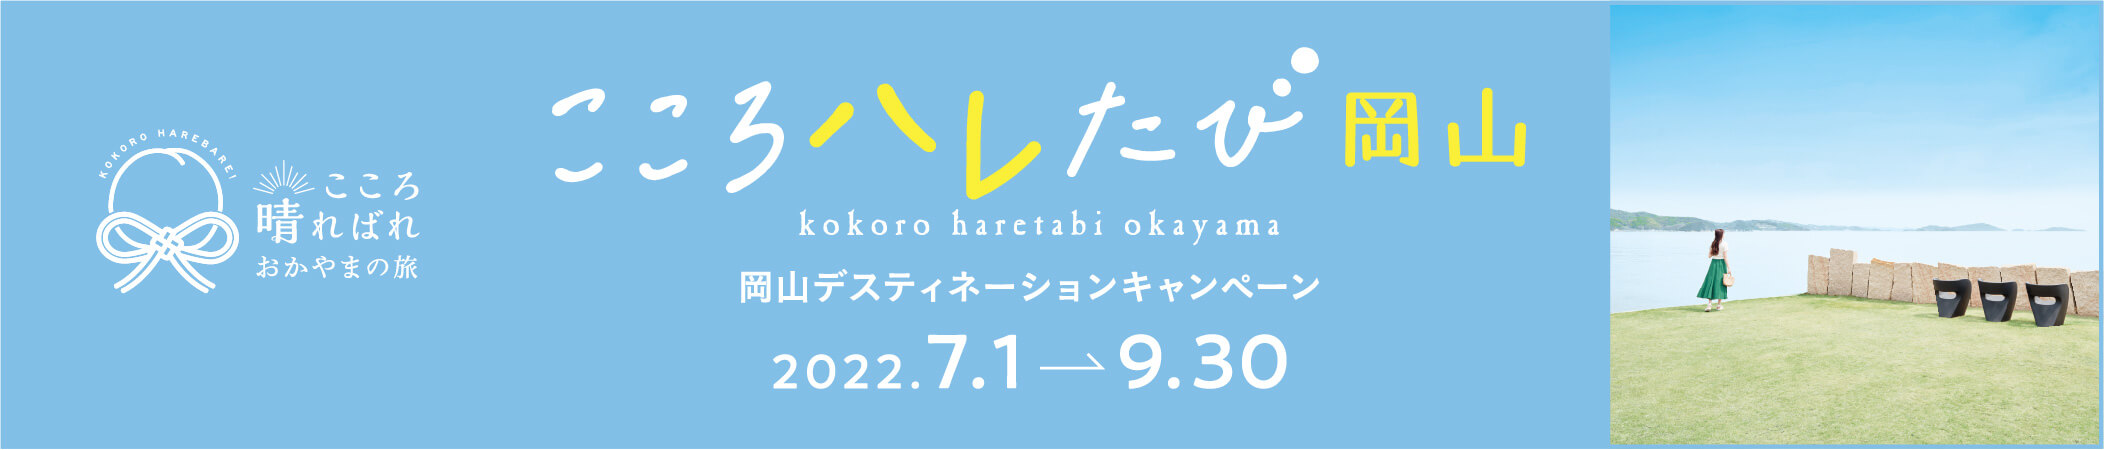 こころ晴ればれ おかやまの旅 KOKORO HAREBARE! こころハレたび岡山 kokoro haretabi okayama 岡山デスティネーションキャンペーン 2022.7.1 → 9.30